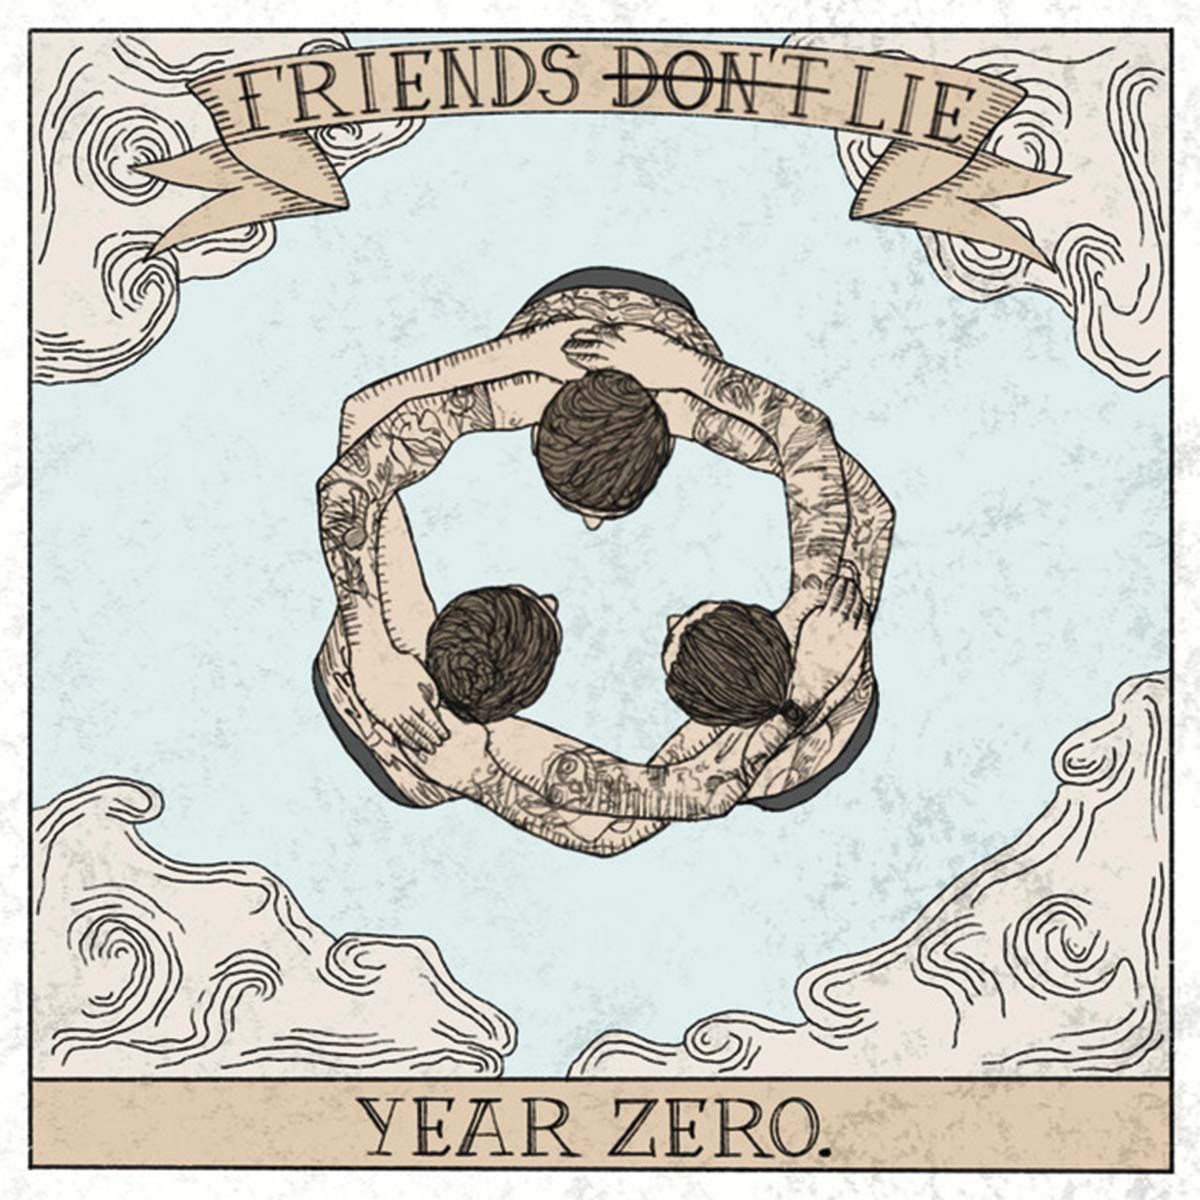 Friend's Don't Lie - Year Zero